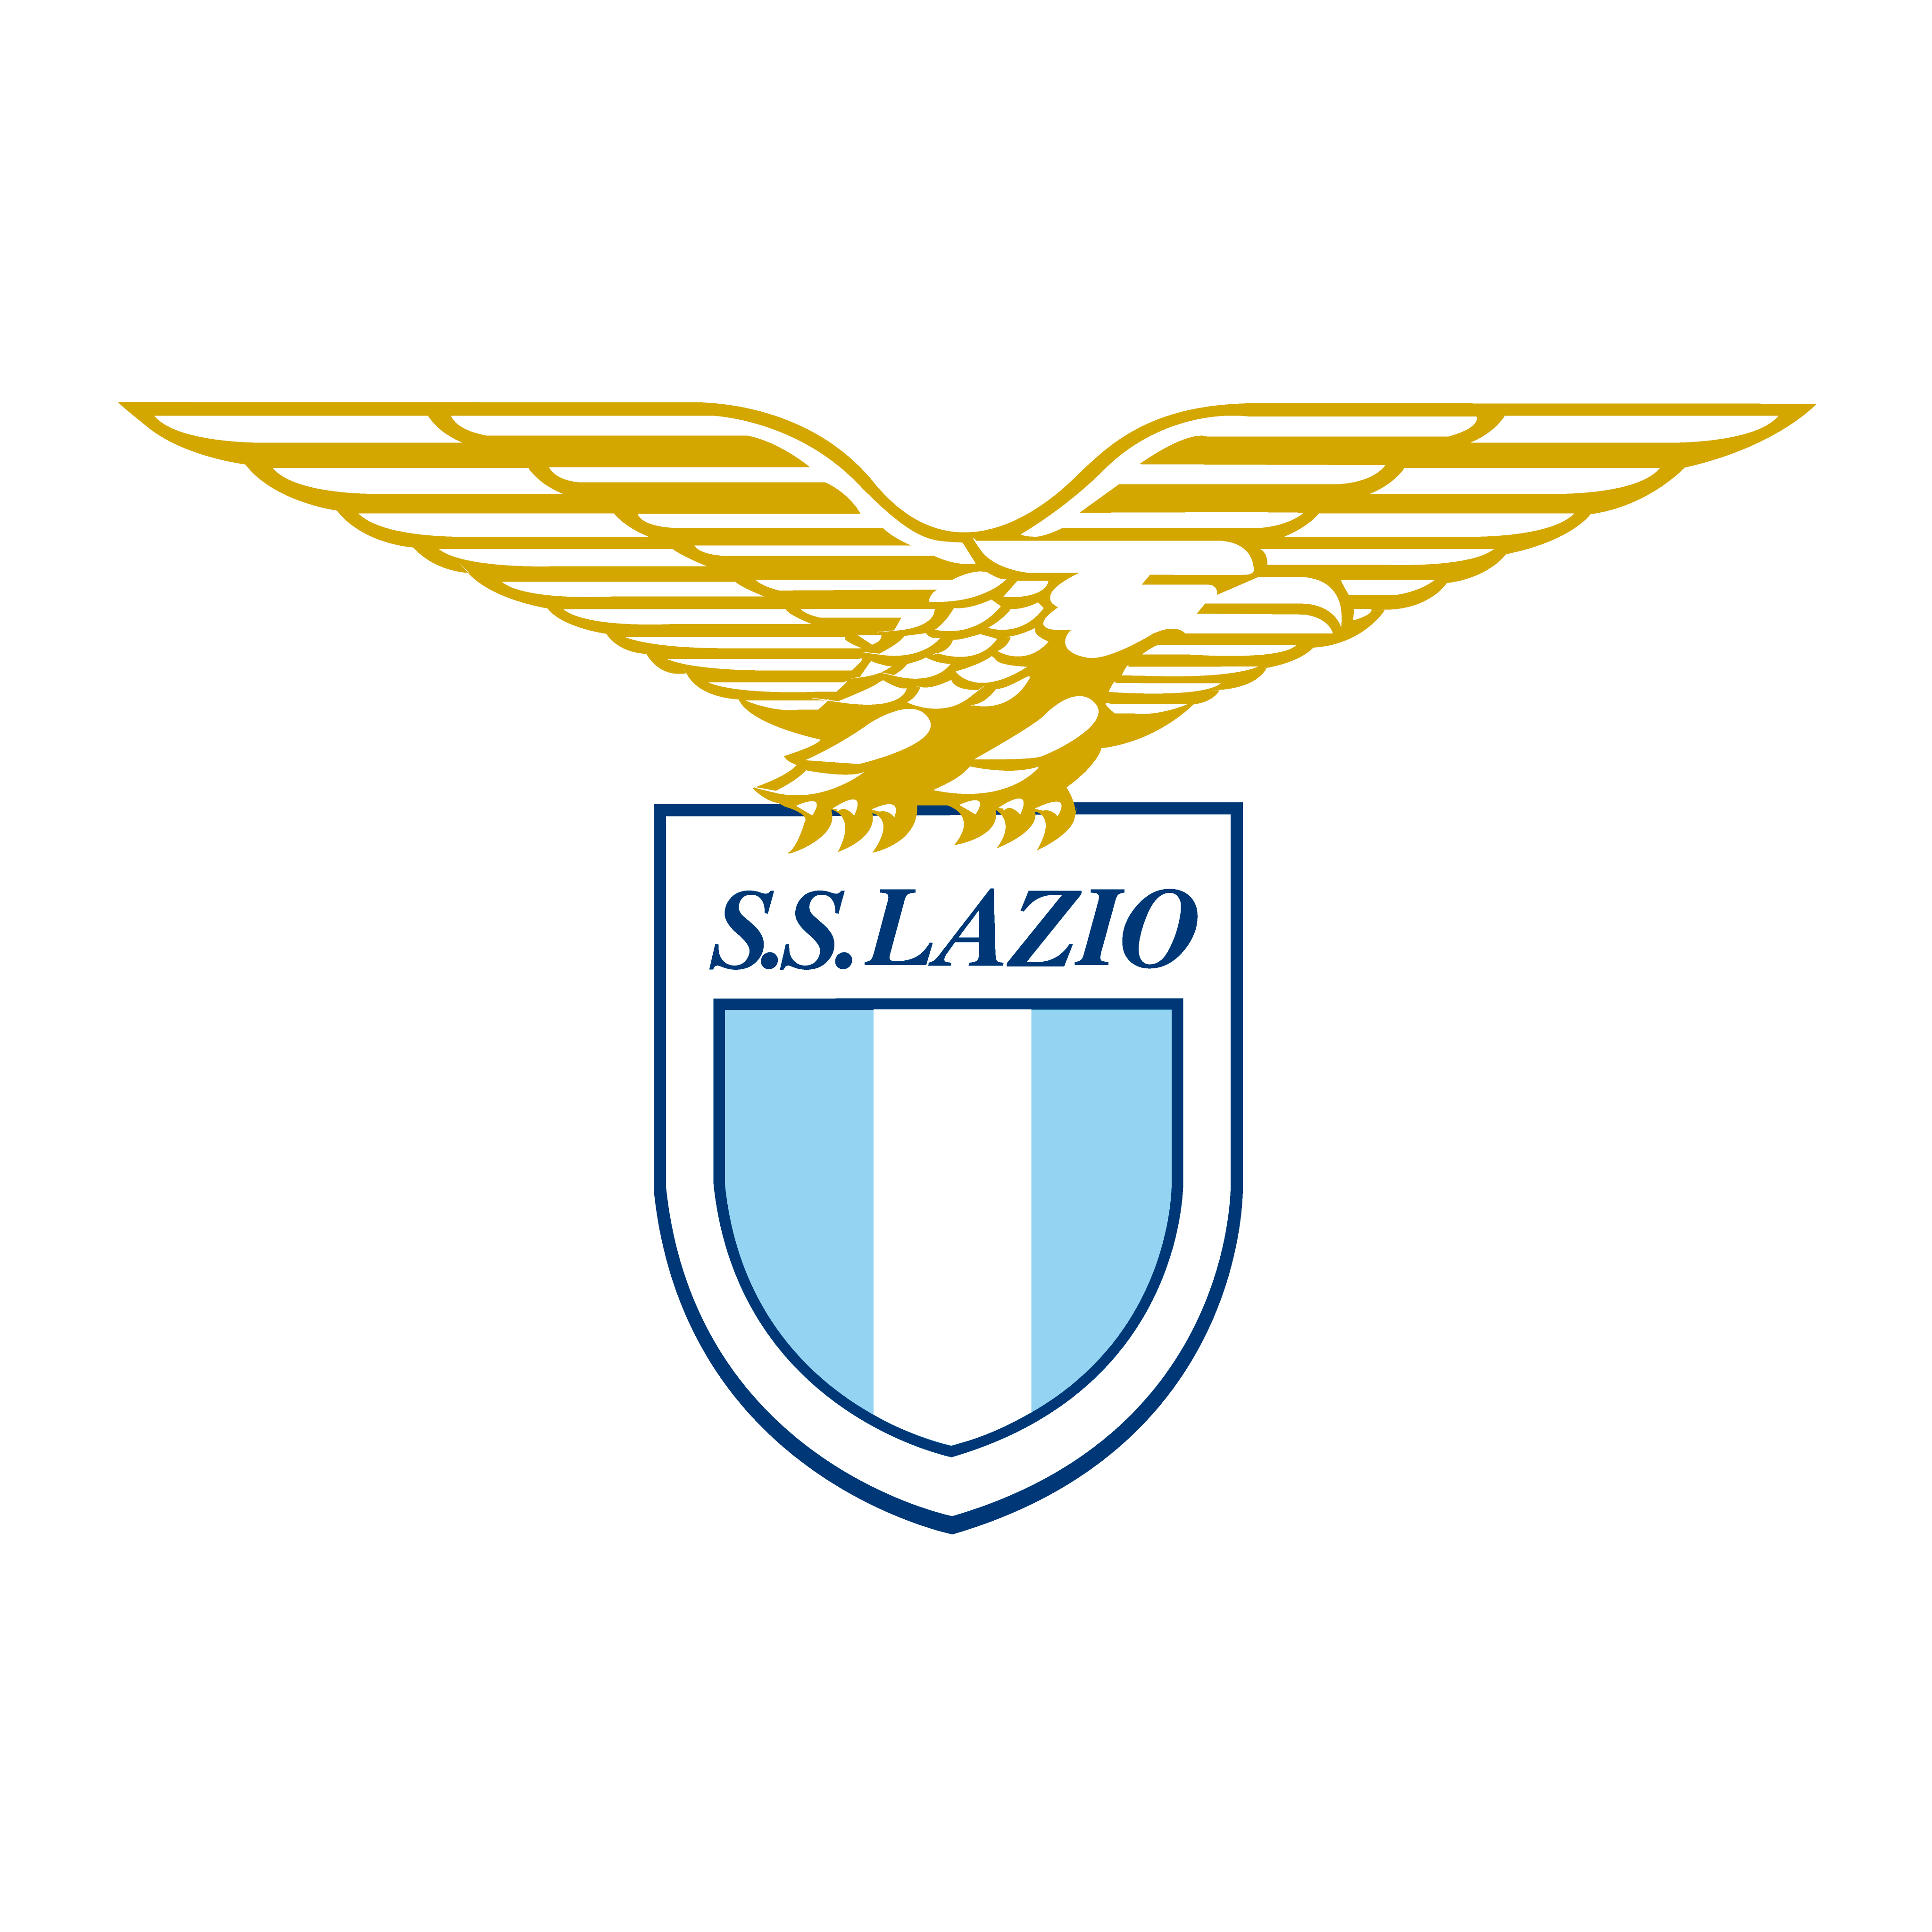 Escudo Lazio